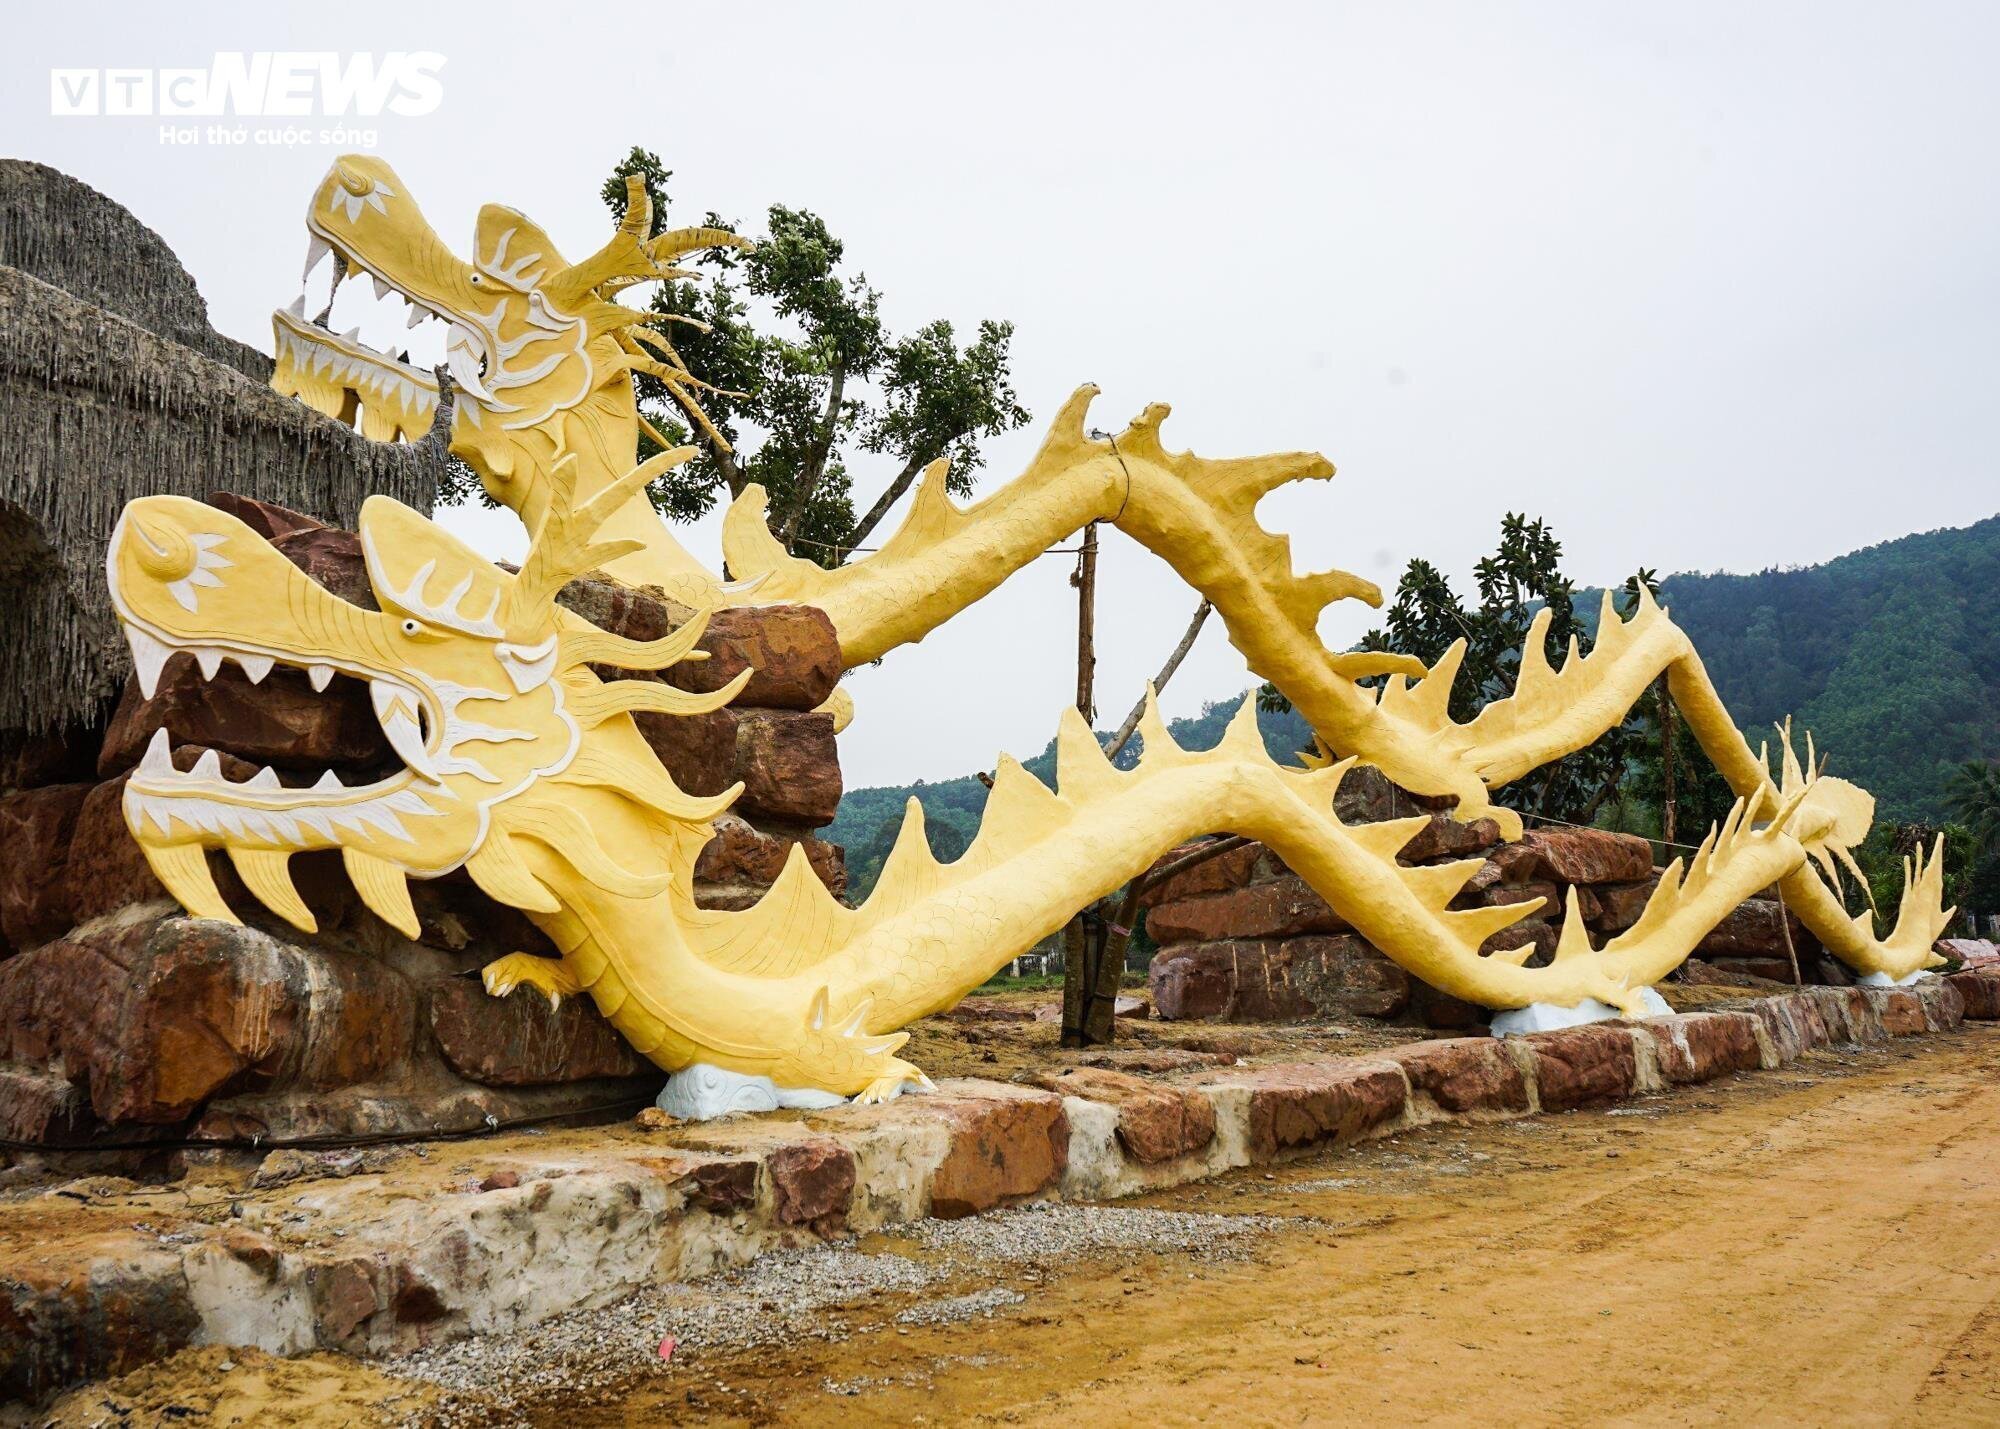 Theo lãnh đạo huyện Quảng Xương, chủ đầu tư điểm du lịch lý giải 4 tượng linh vật rồng gây tranh cãi này chỉ là tường rào cách điệu, tùy theo góc nhìn của mỗi người sẽ có đánh giá linh vật đẹp hay xấu. (Ảnh: Ngô Nhung)